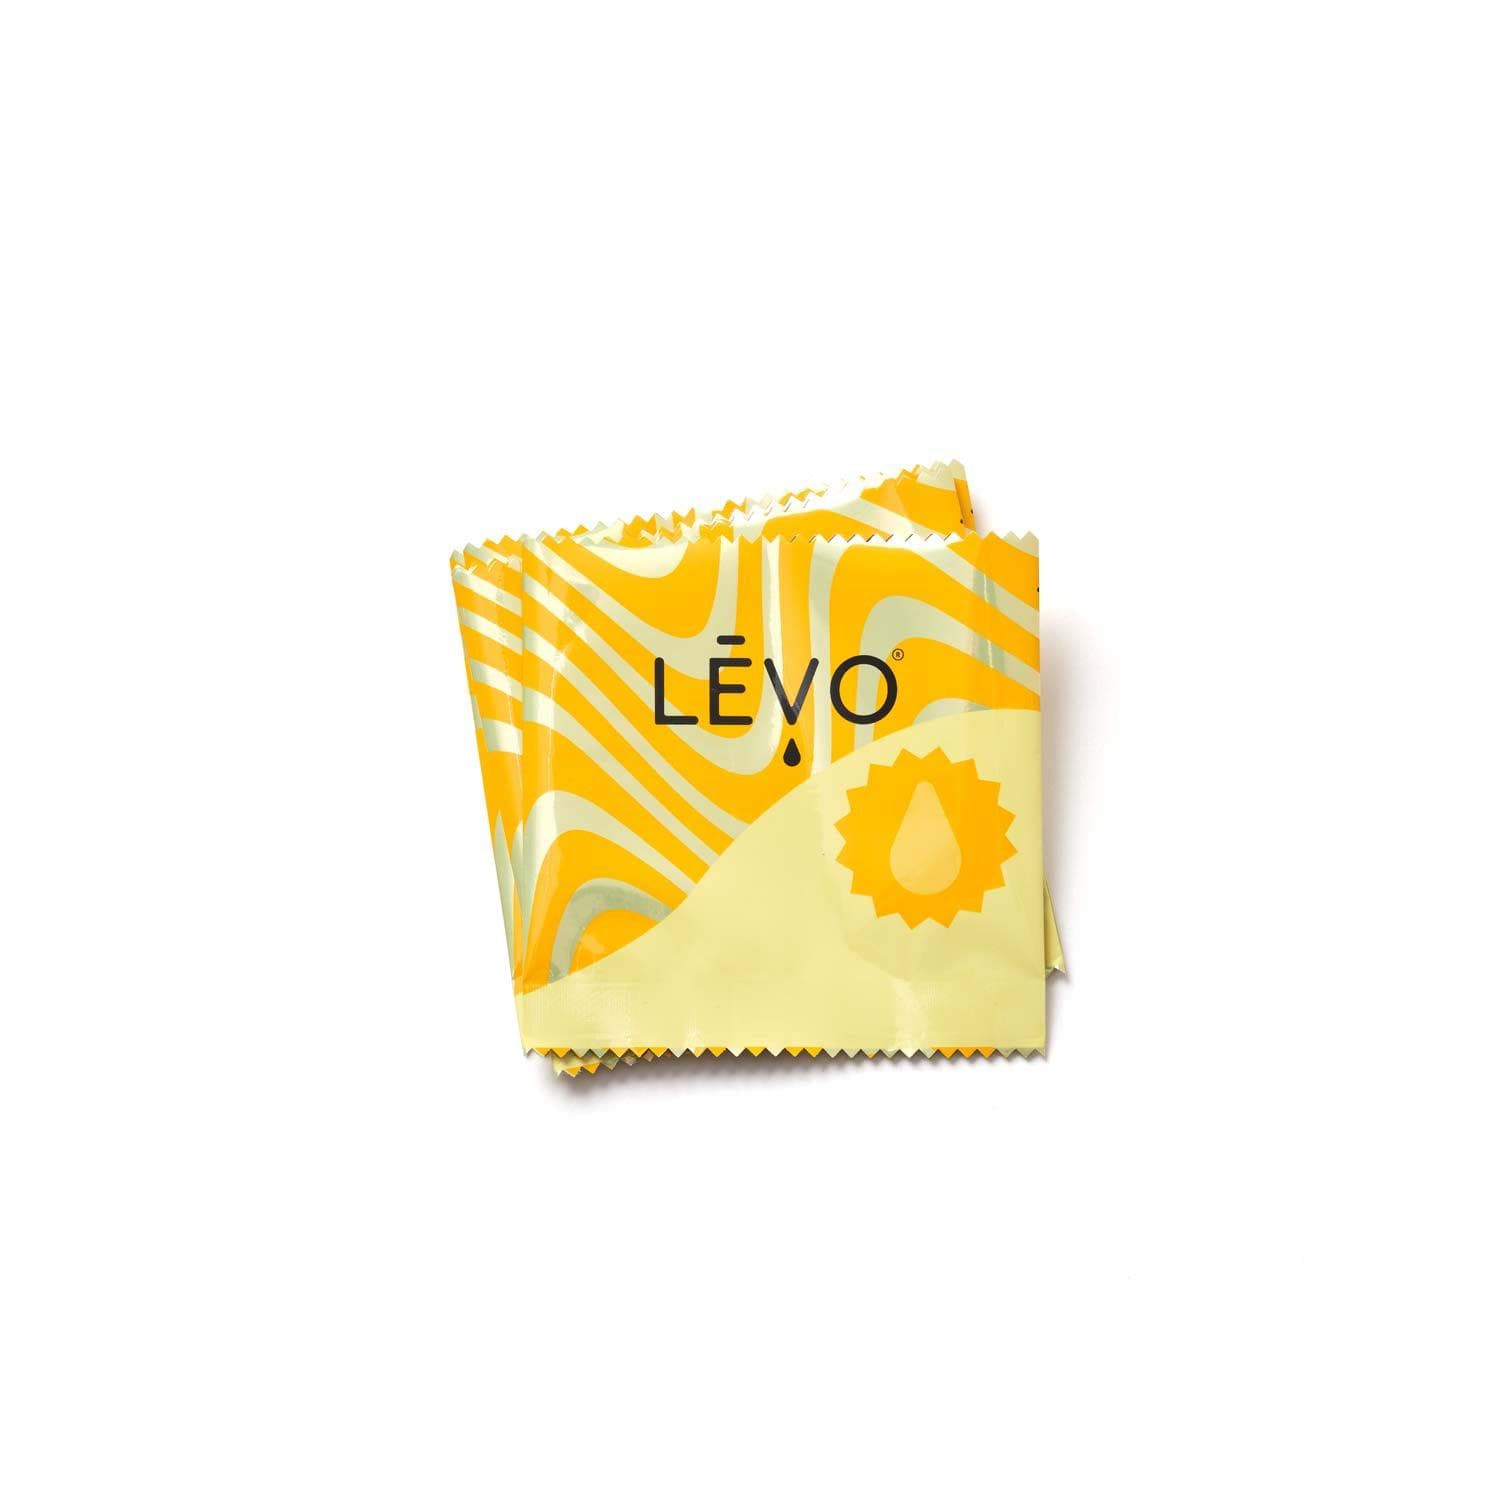 LEVO Small wrap refills in Gold